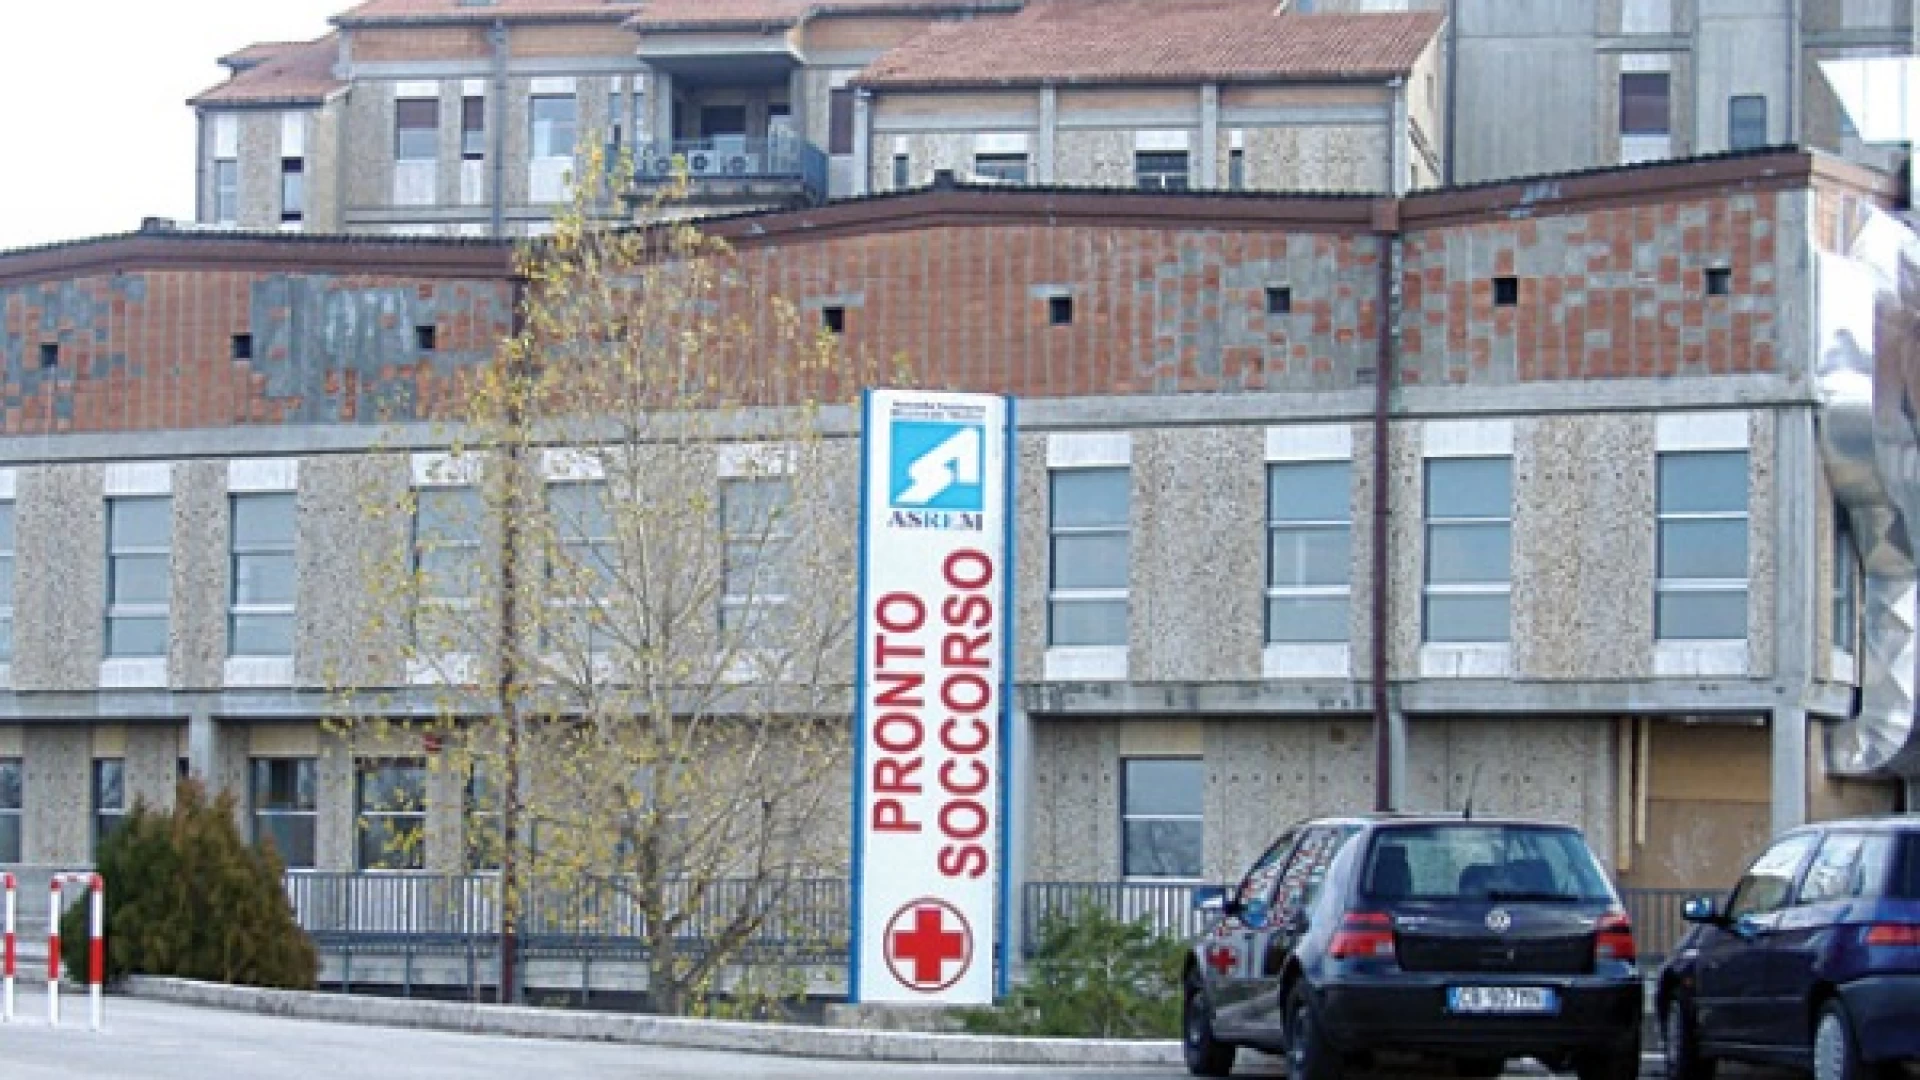 Emergenza Covid in Molise. 15 contagi , 57 guariti su 154 tamponi processati.